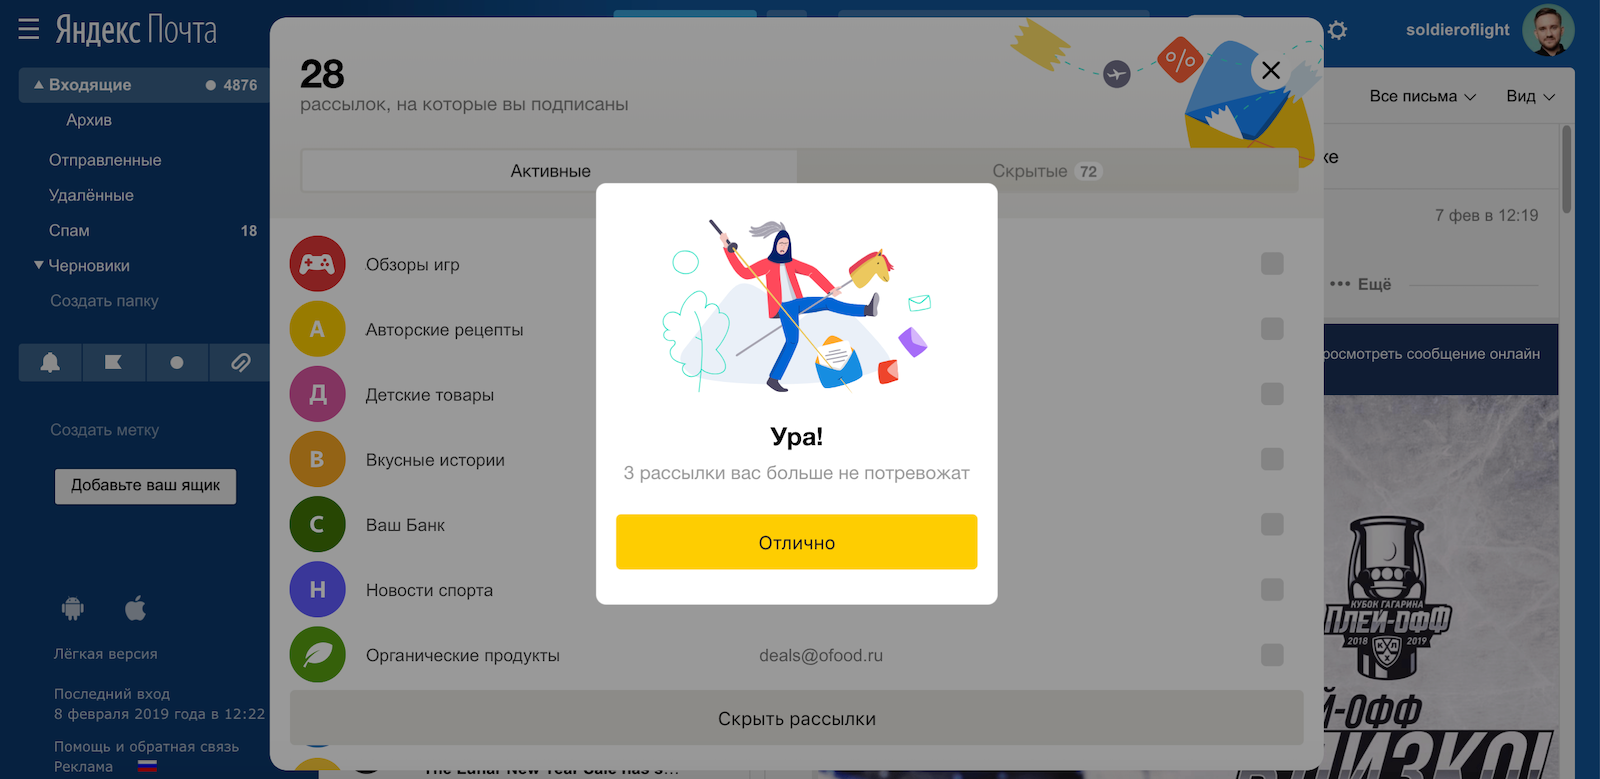 Как отказаться от ненужных рассылок с помощью одной кнопки. Опыт команды Яндекс.Почты - 1